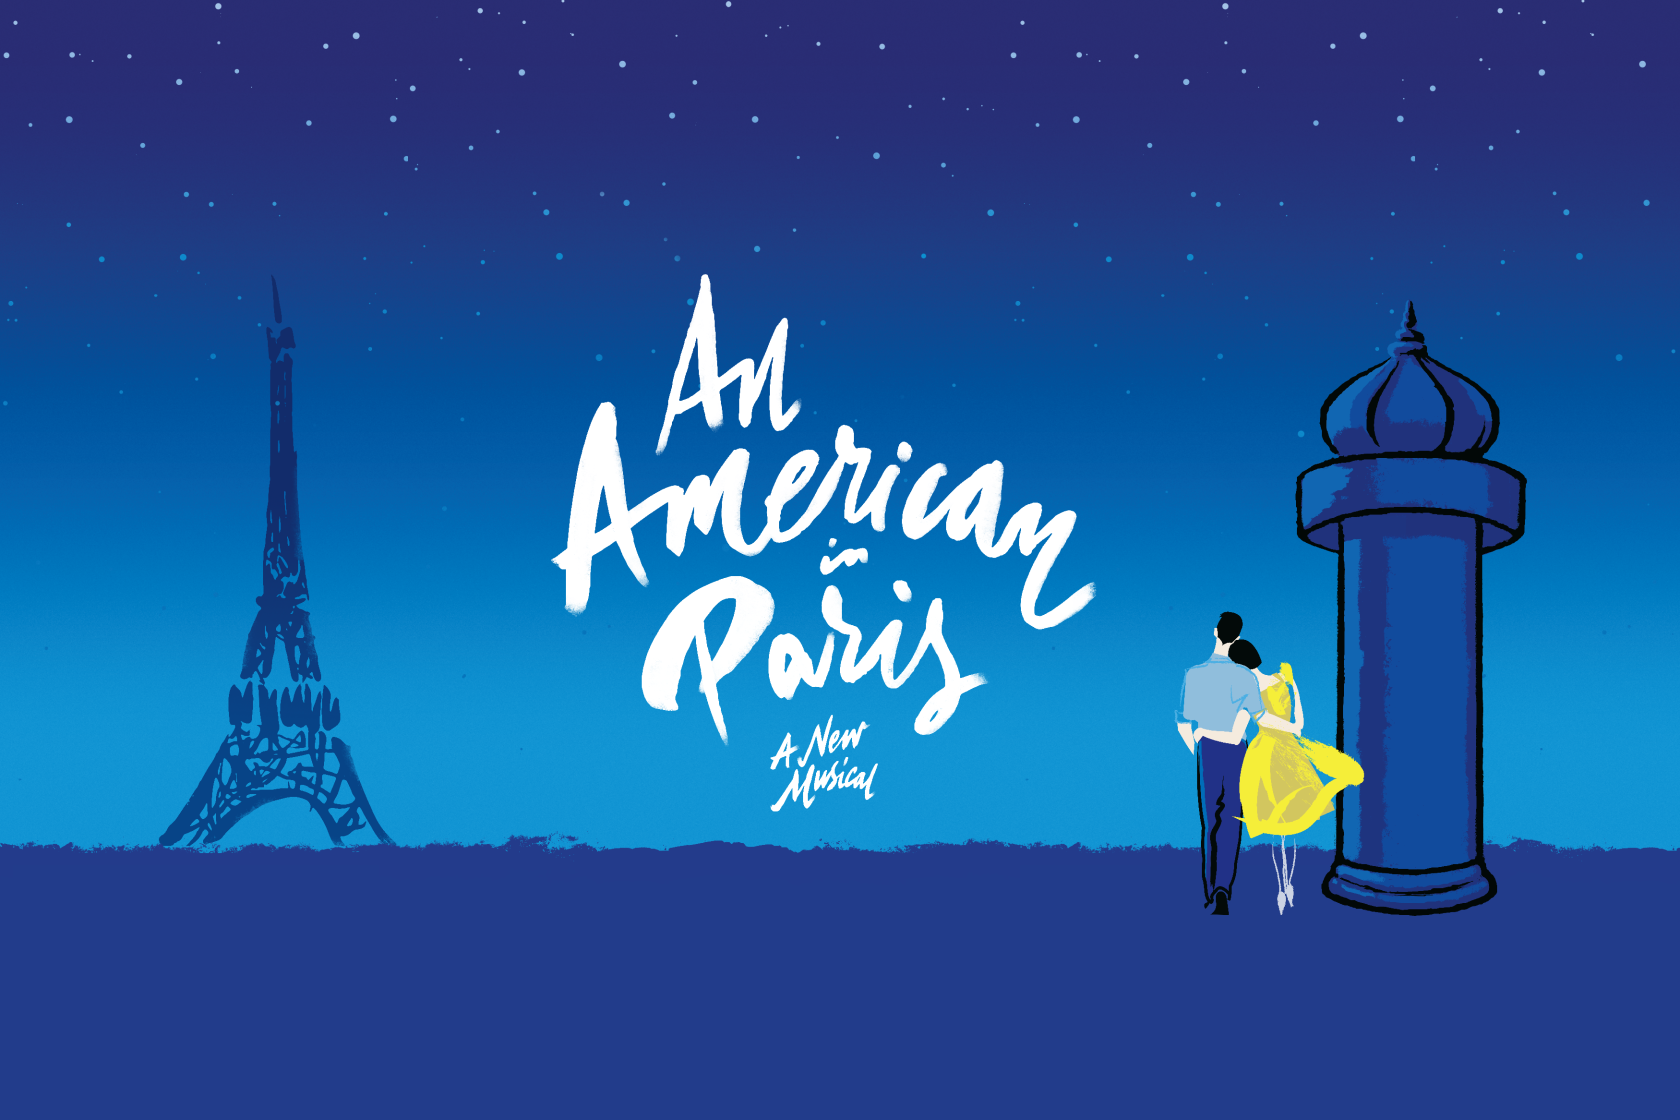 劇団四季より新作ミュージカル『パリのアメリカ人』〜小粋に、華やかに、スタイリッシュなダンスが描く、パリの恋〜